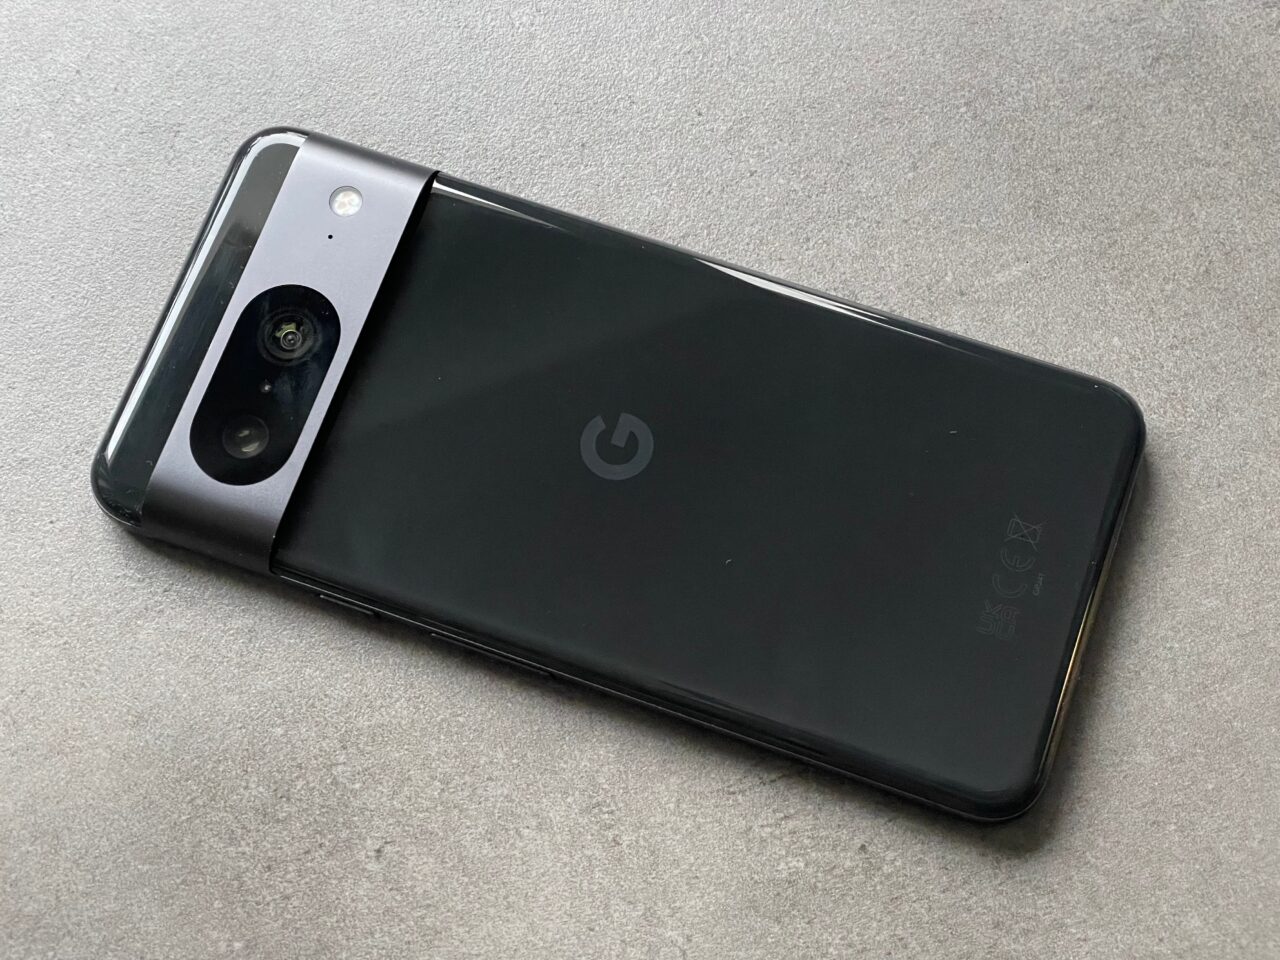 Czarny smartfon z tylnym aparatem fotograficznym umieszczonym w górnym rogu i logo producenta pośrodku tylnej obudowy, leżący na szarym tle.